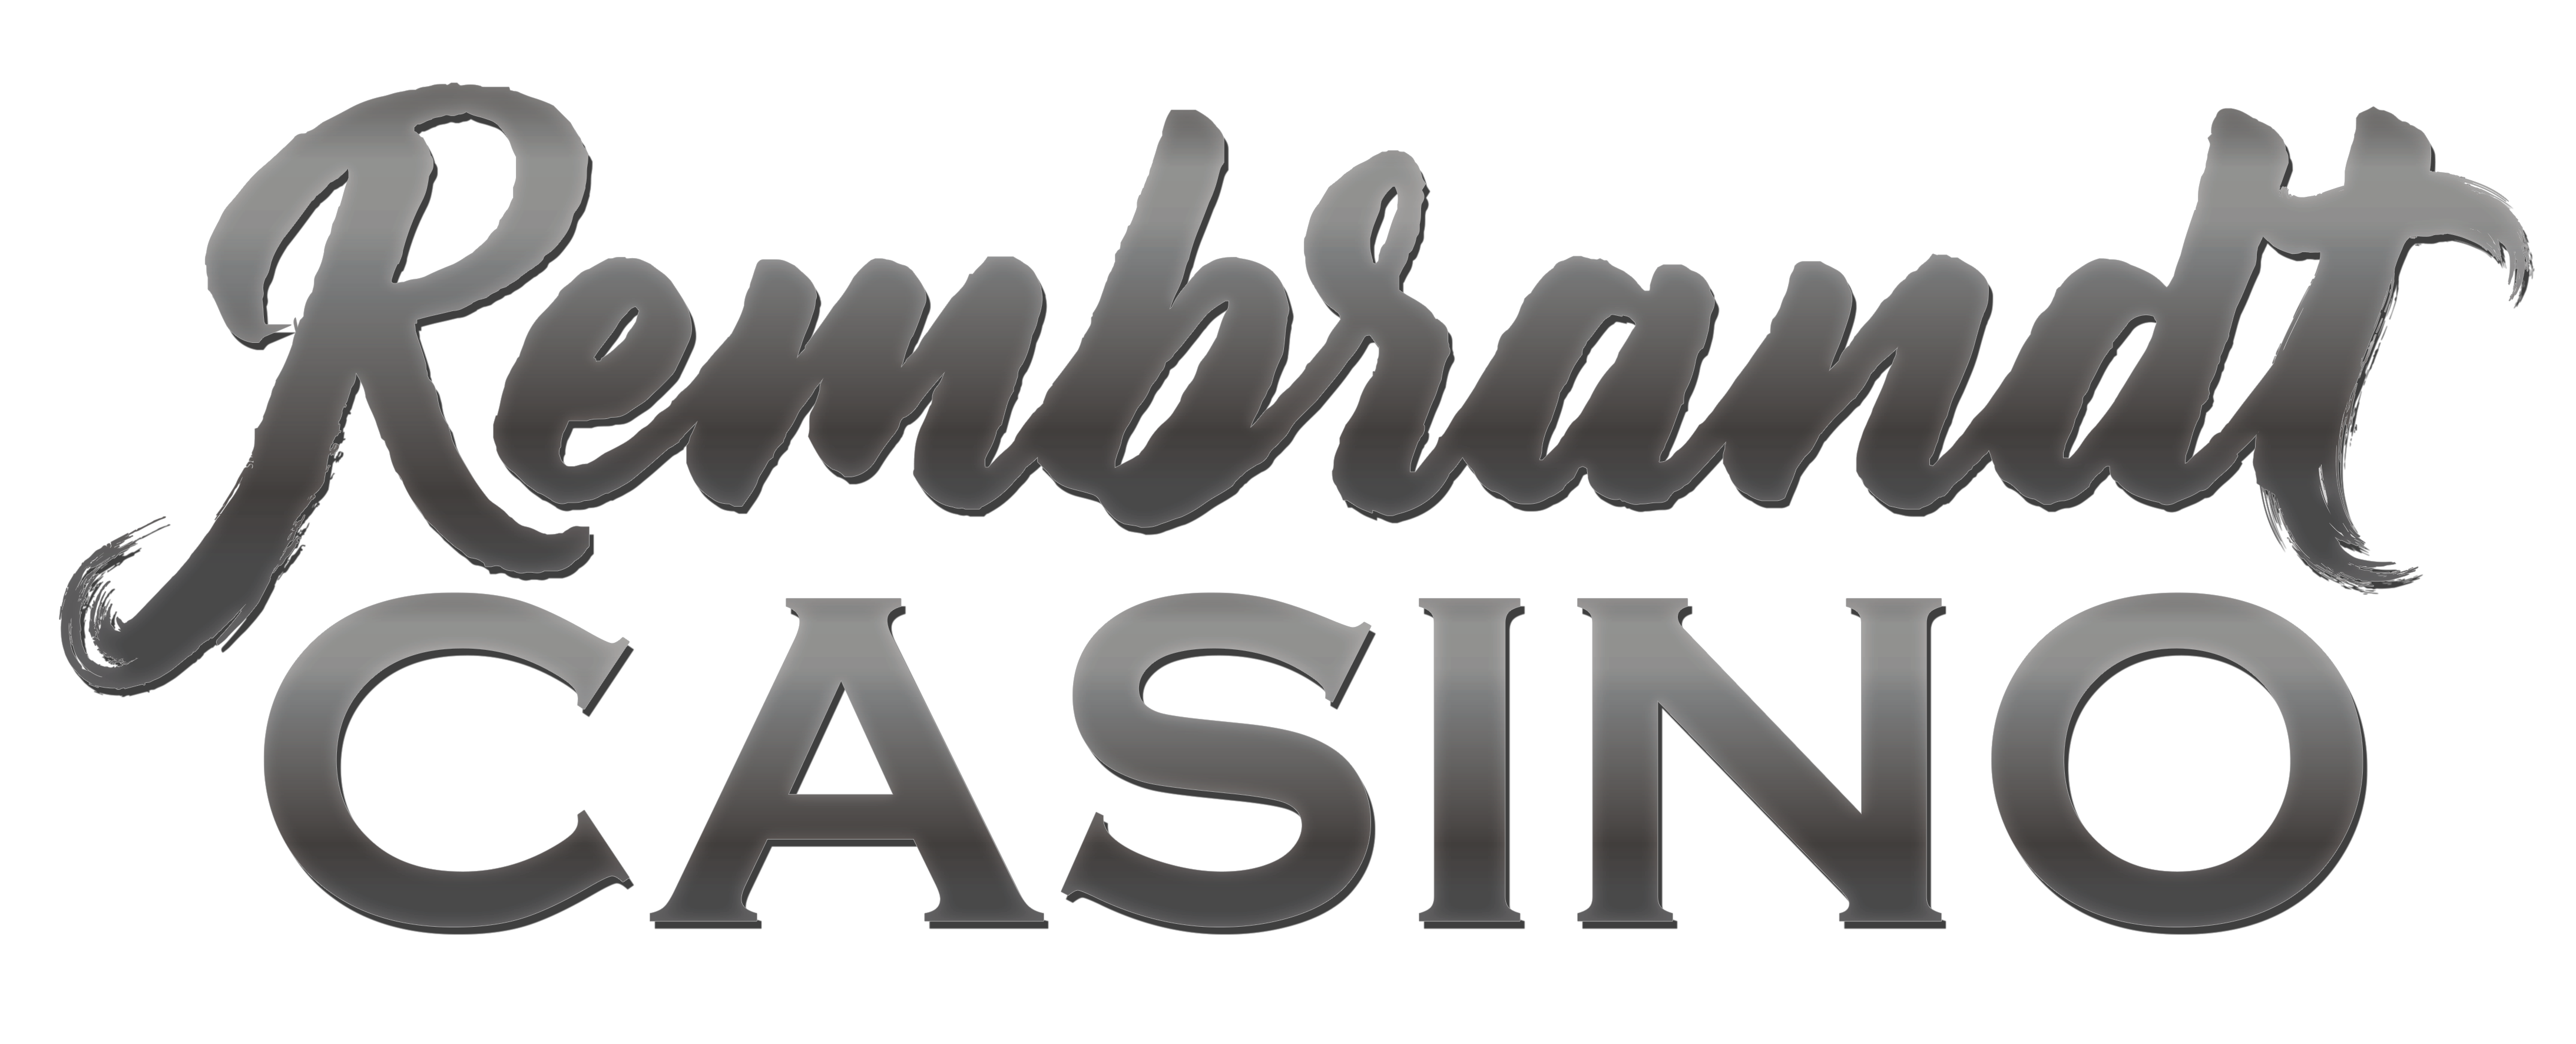 rembrandt casino online logo